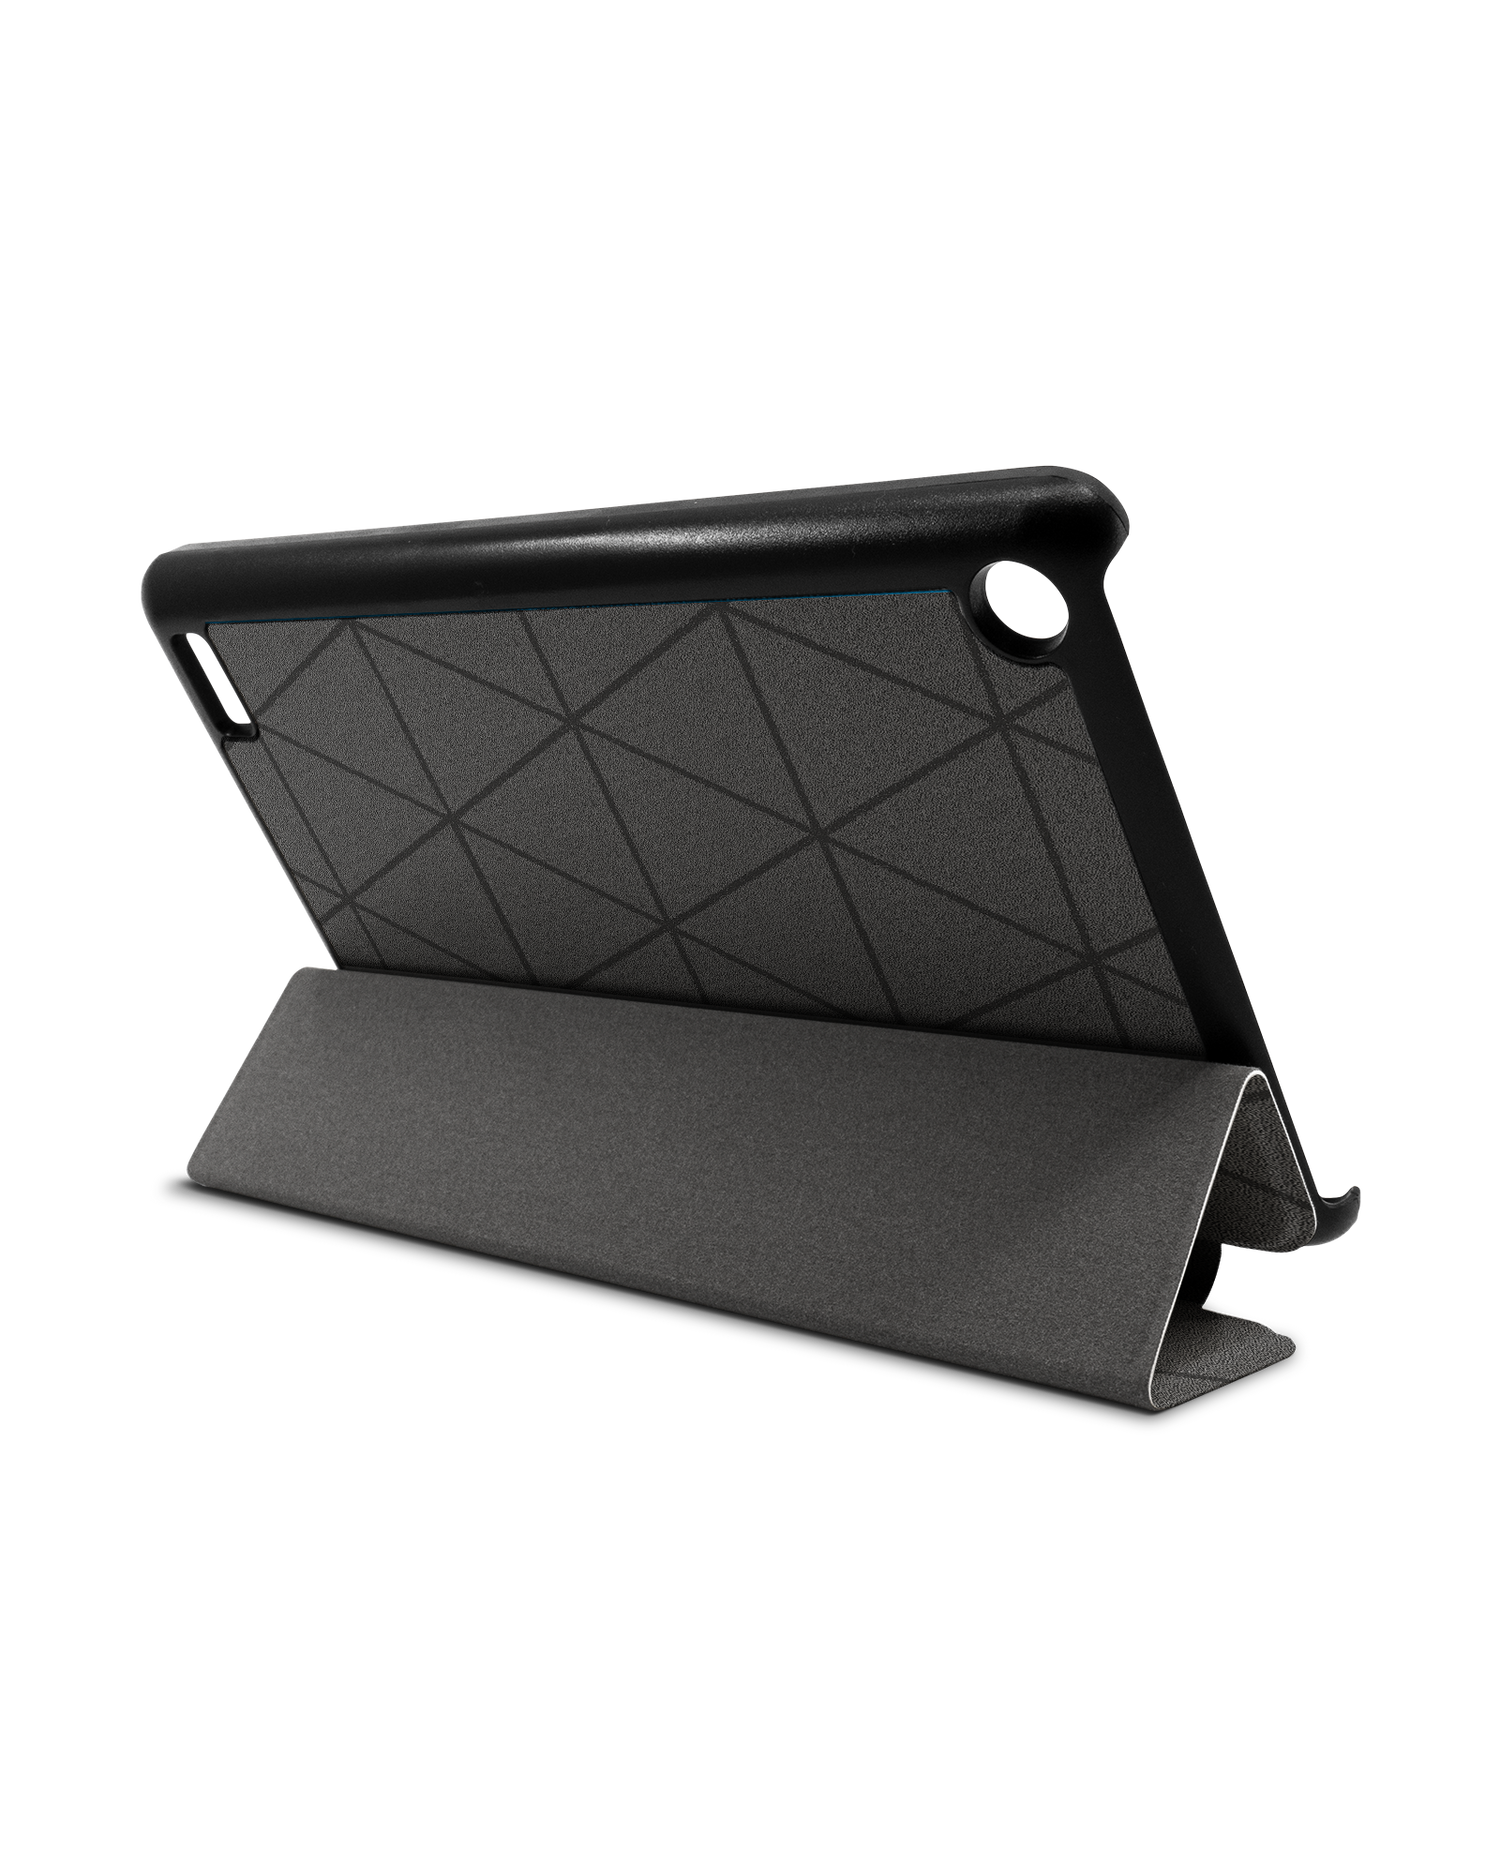 Ash Tablet Smart Case für Amazon Fire 7: Aufgestellt im Querformat